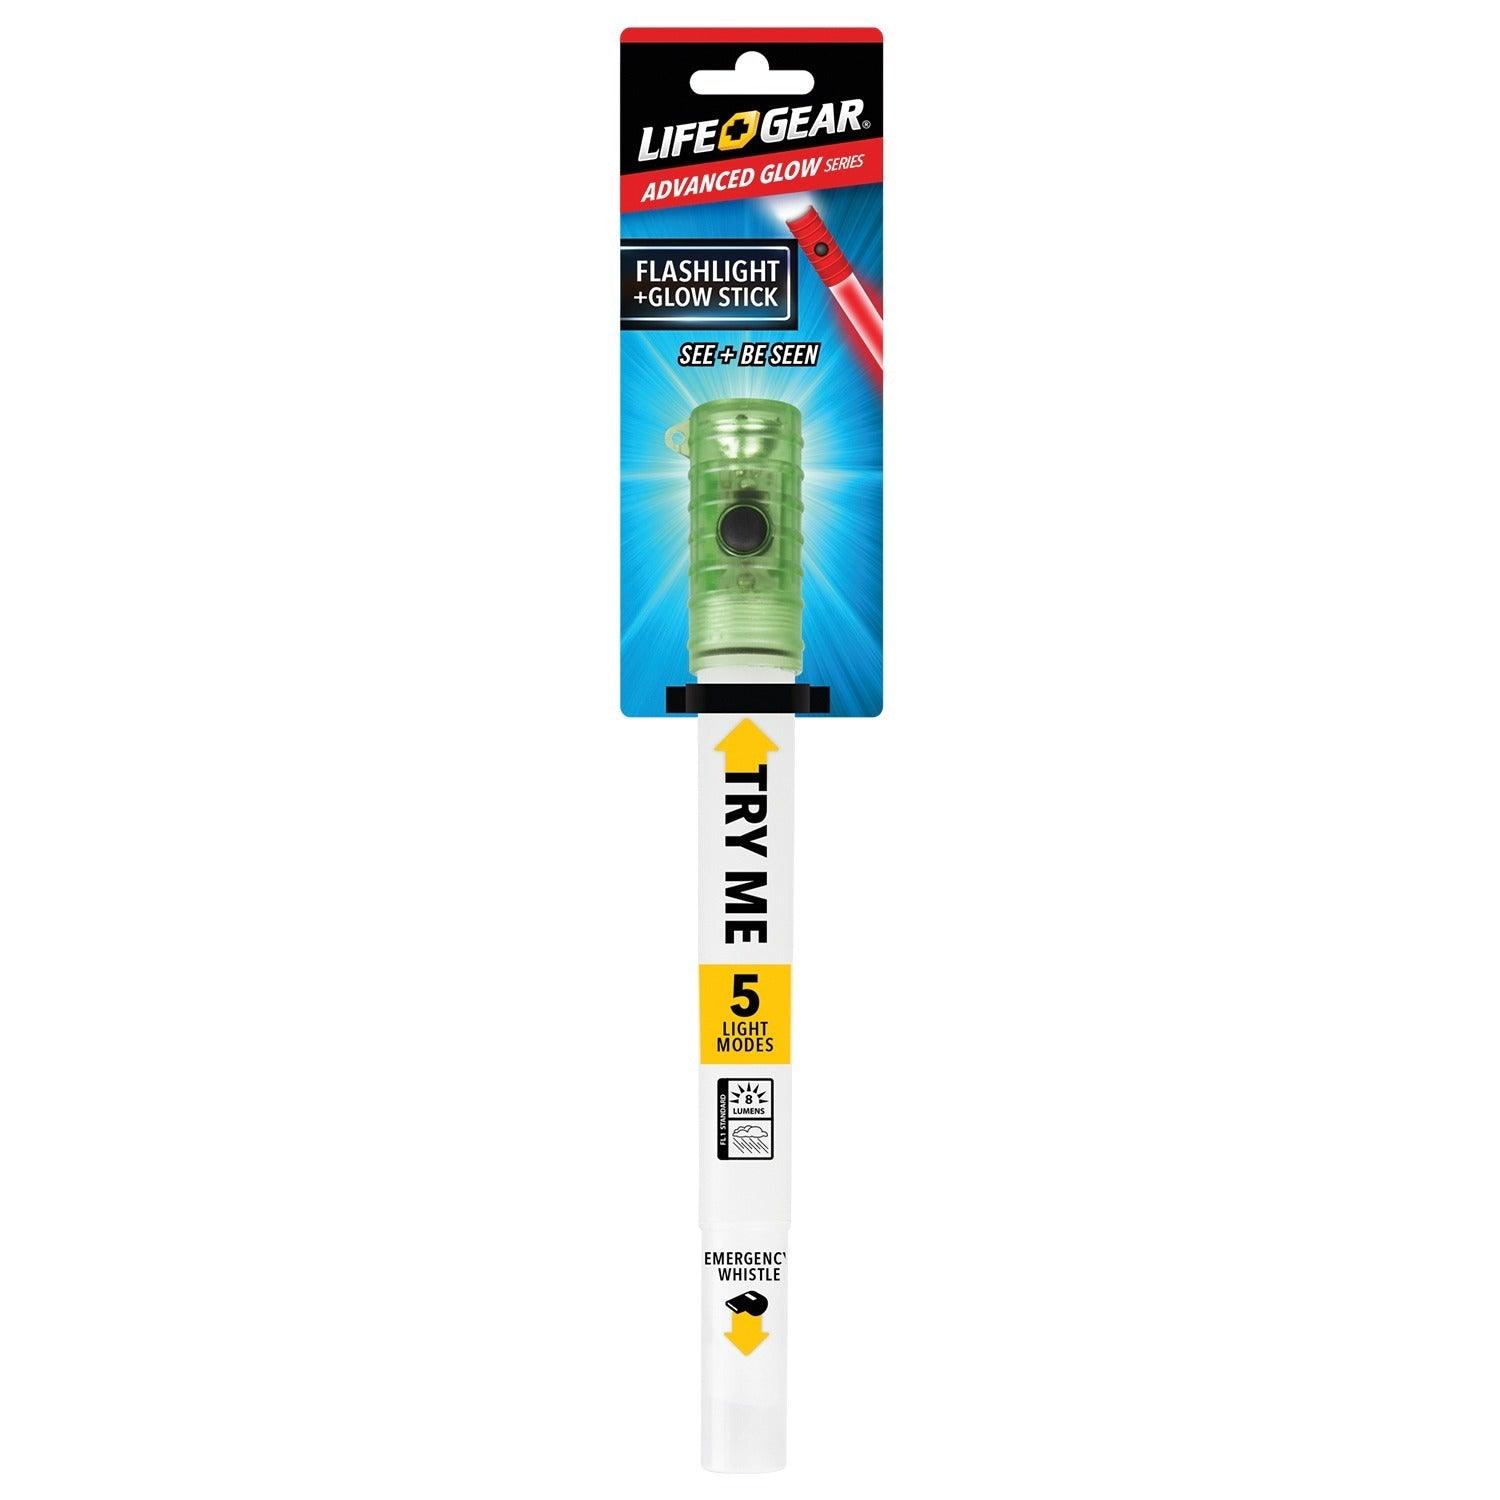 Life+Gear LG117 8-Lumen LED Glow Stick + Flashlight (Green) - FSSA Global Bullet